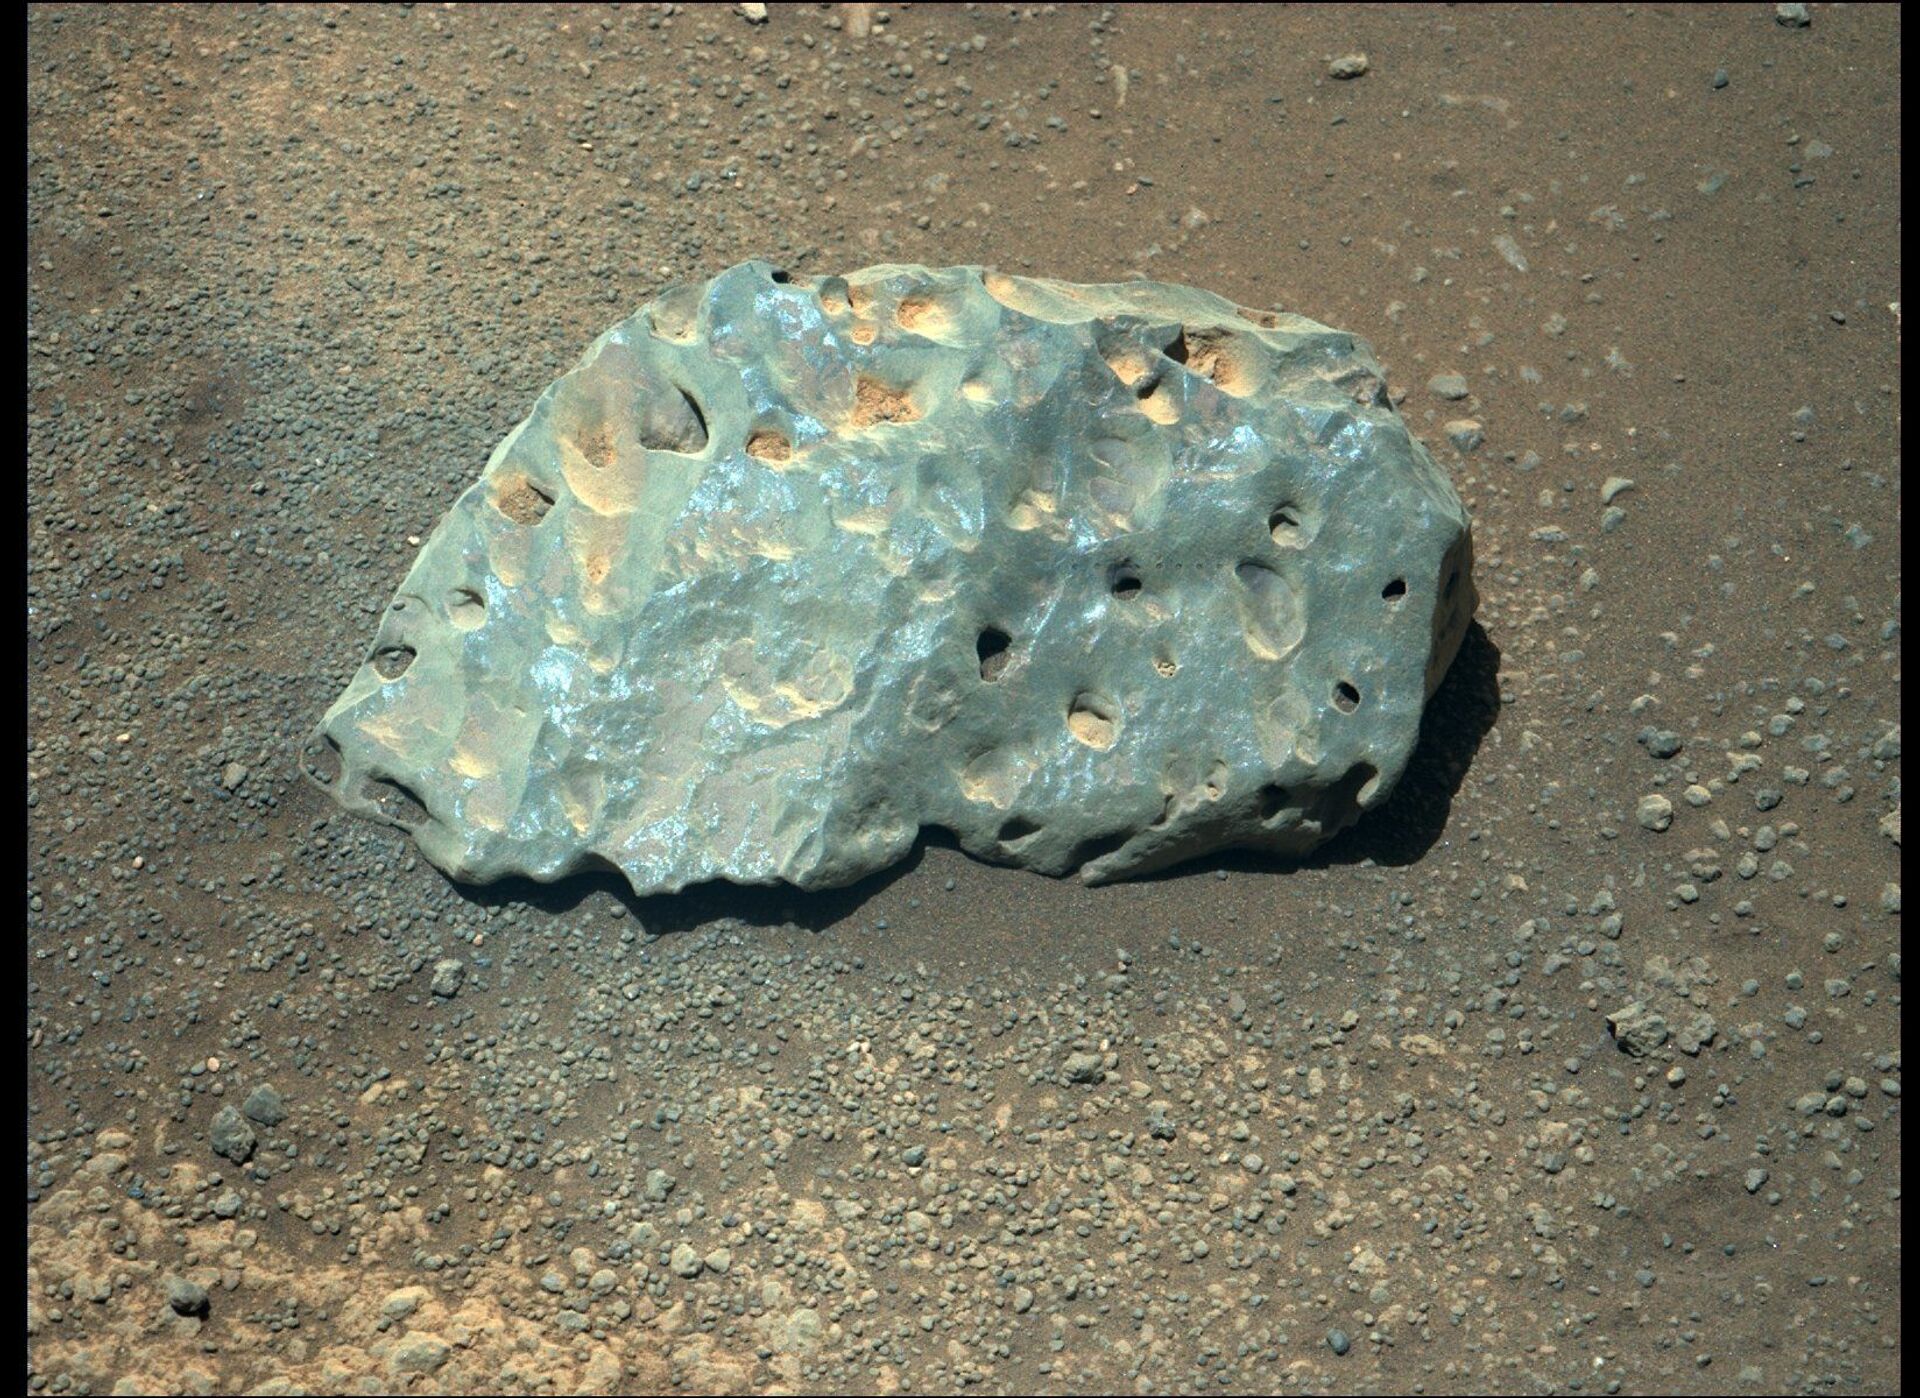 Rochas incomuns são registradas pelo rover Perseverance da NASA em Marte (FOTOS) - Sputnik Brasil, 1920, 05.05.2021